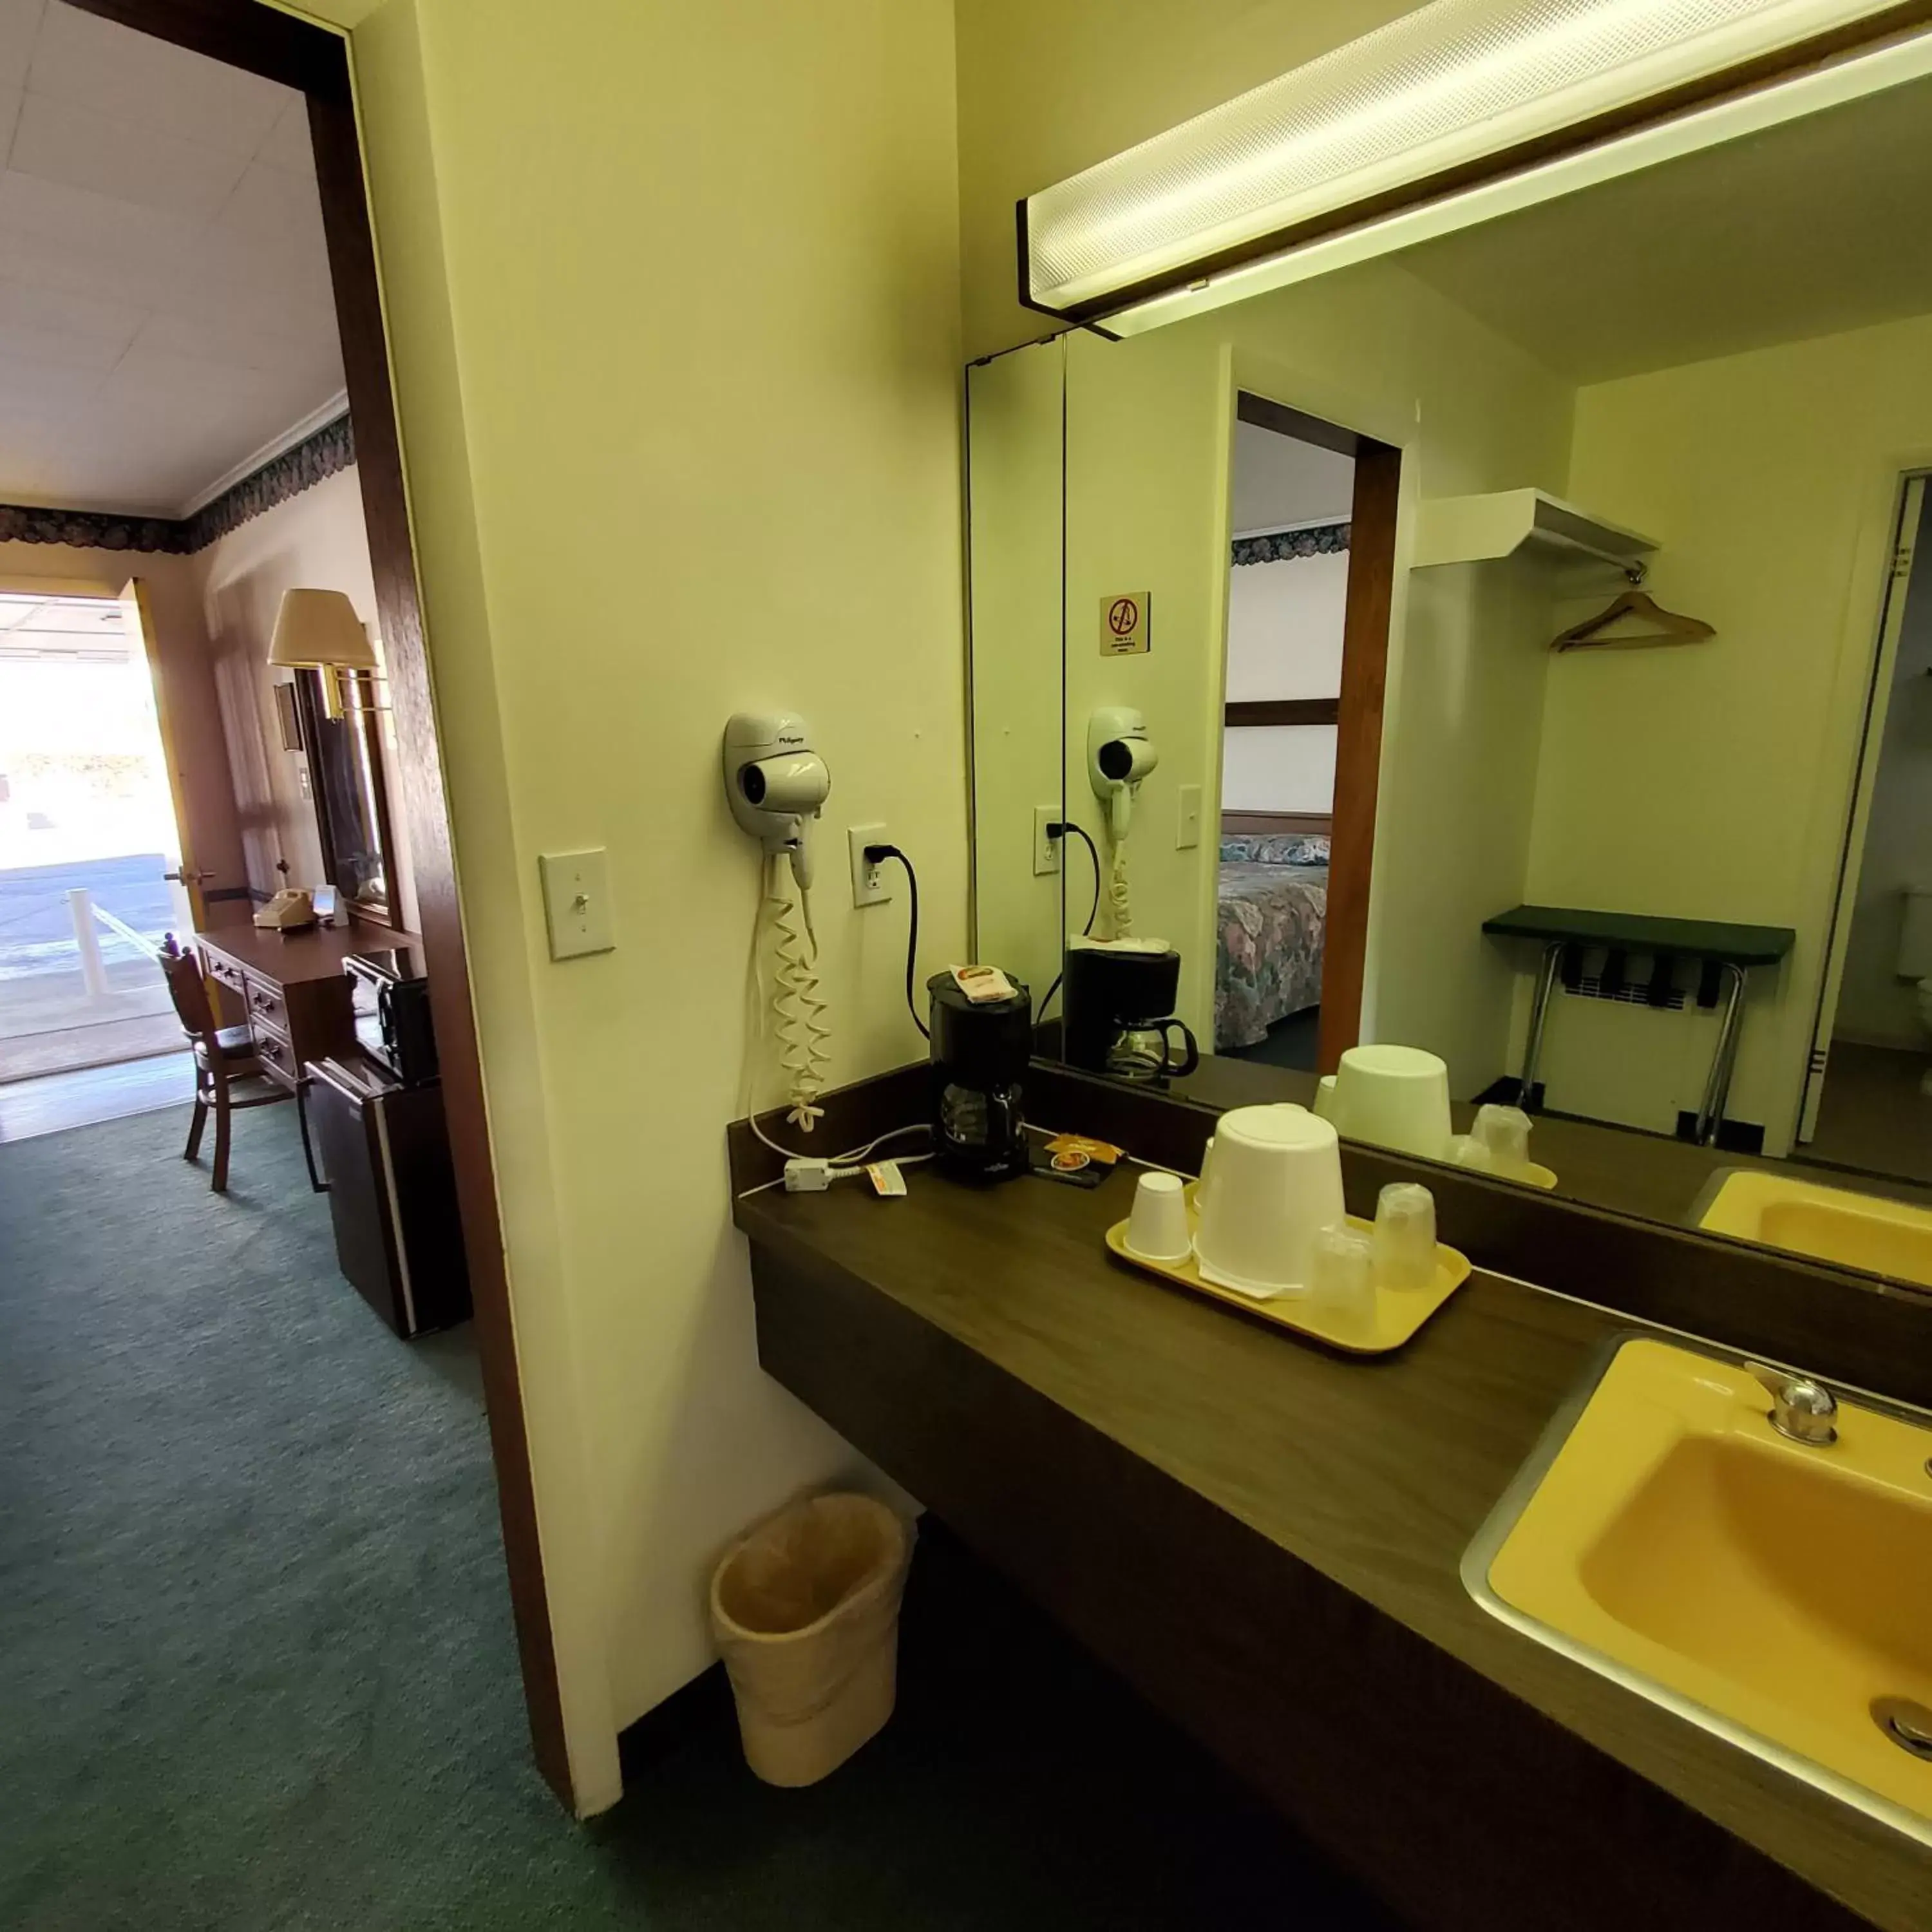 Bathroom in Robin Hood Motel